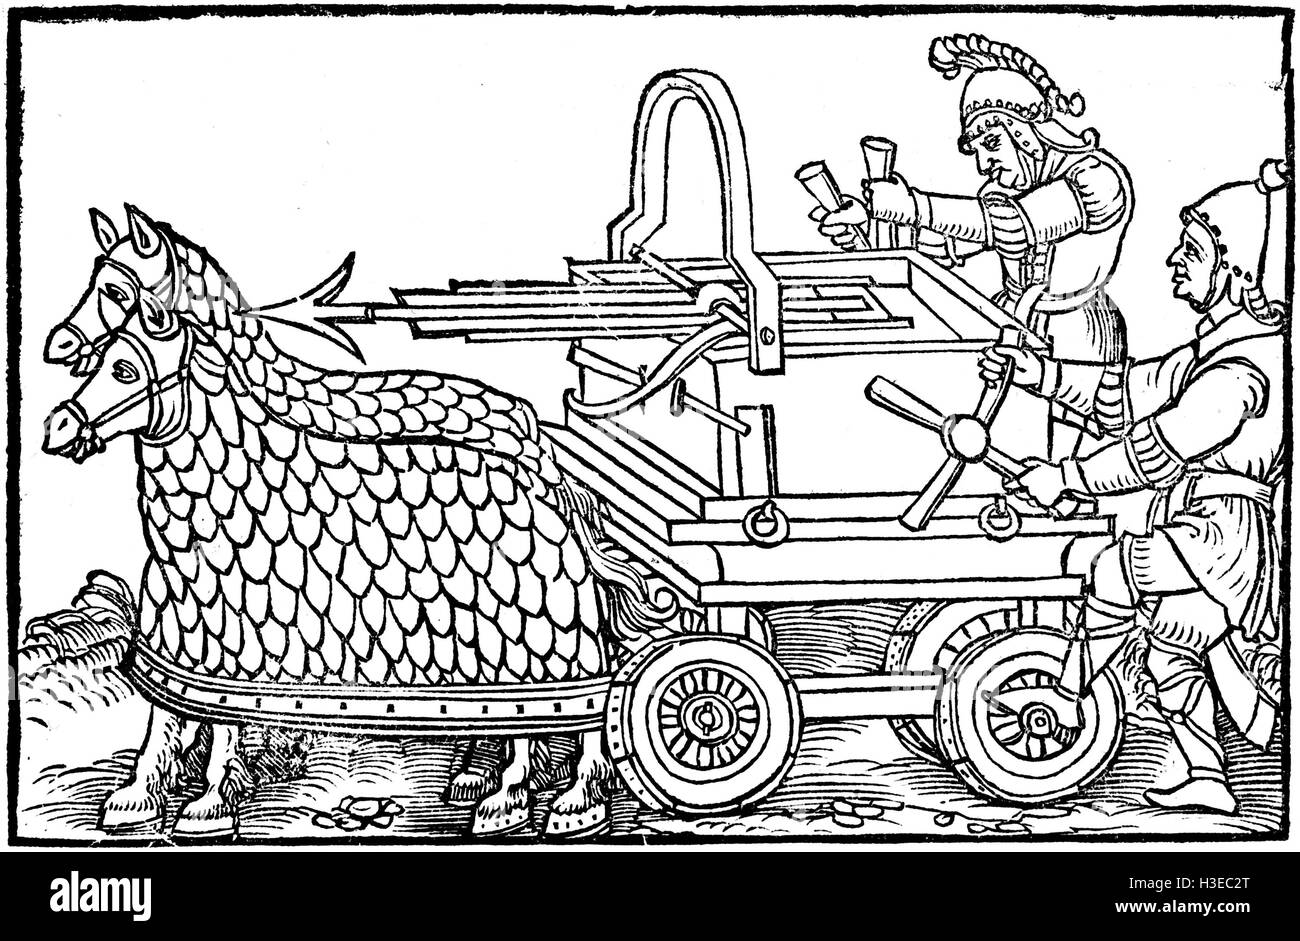 Caballos romano ballesta de De rebus bellicis (sobre las cosas de la Guerra) publicado en 1552 siendo una reimpresión de un trabajo muy anterior Foto de stock